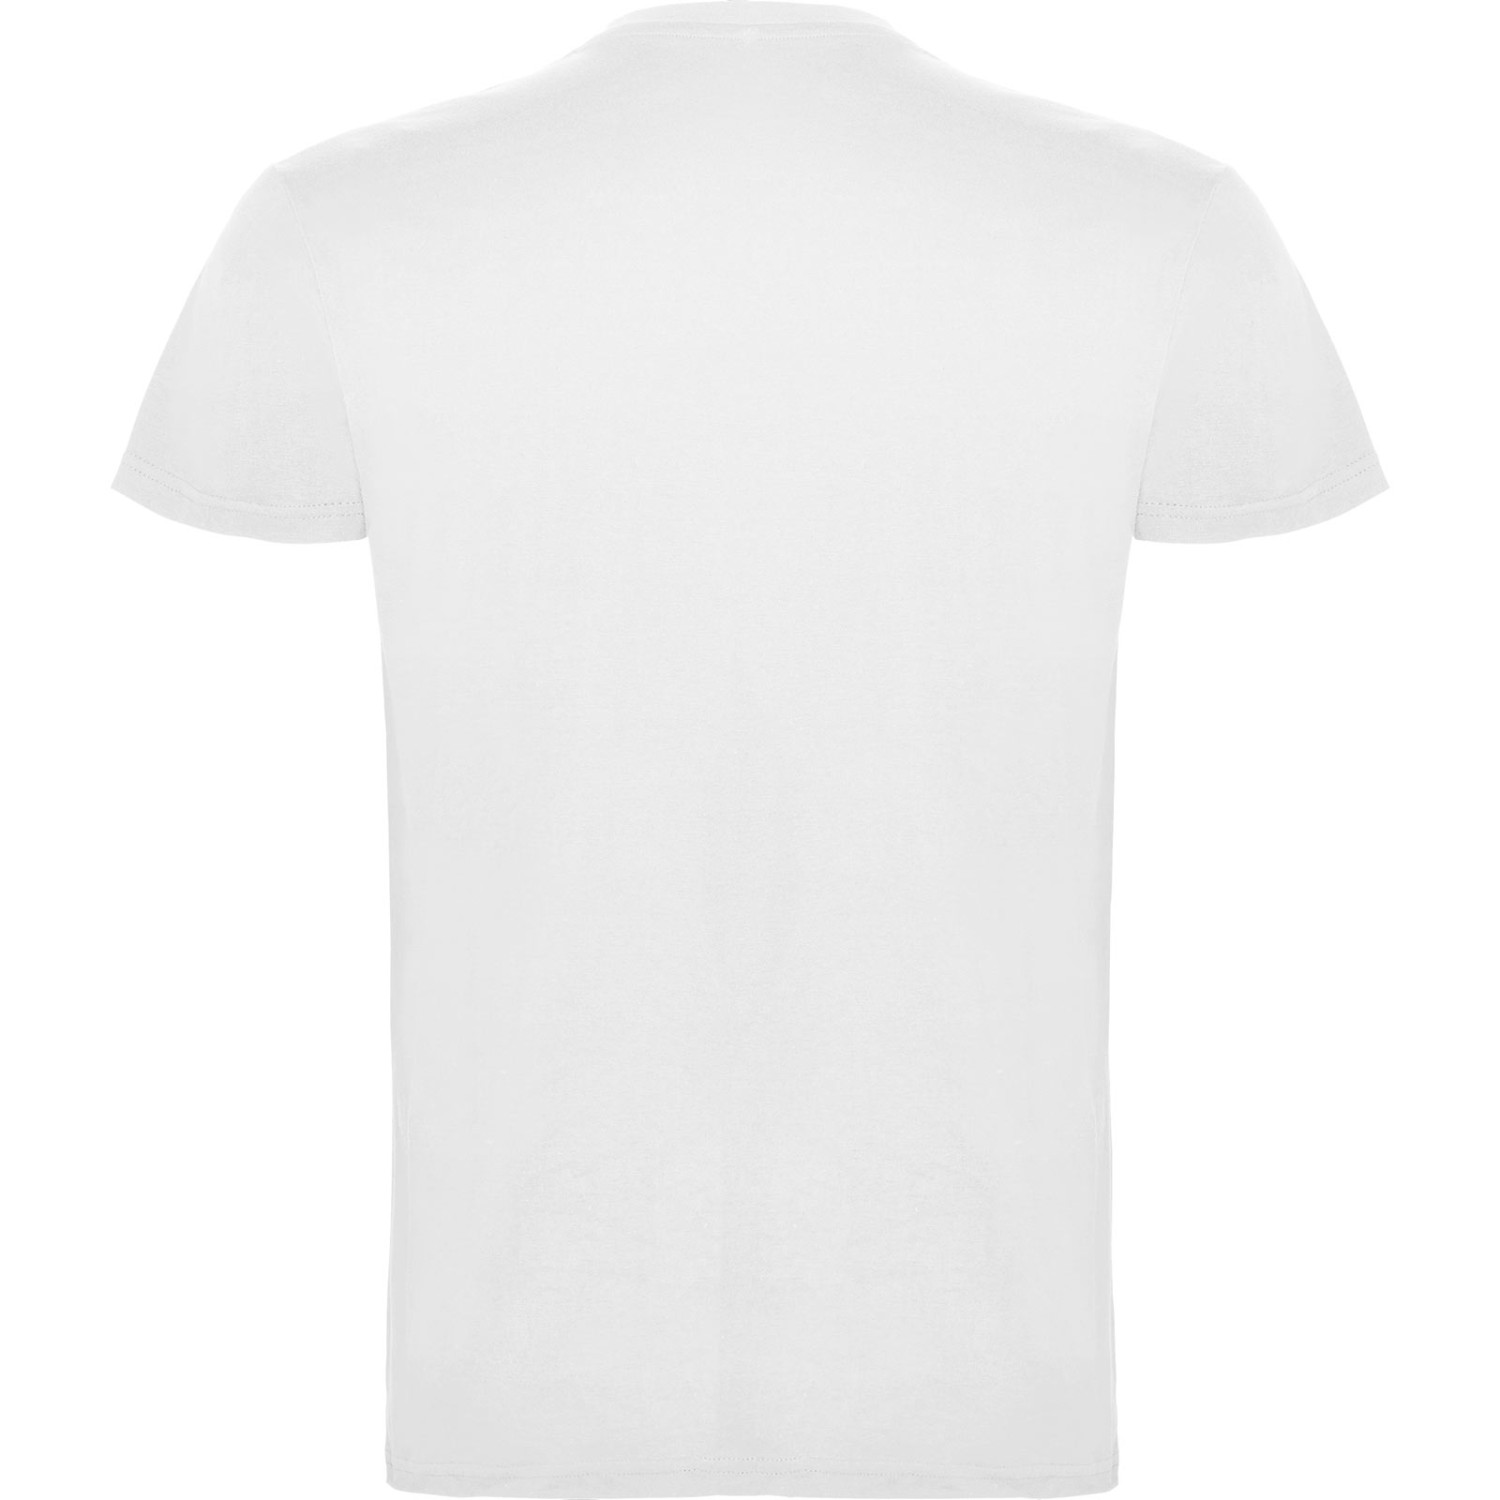 3. Foto T-Shirt BEAGLE Kurzarm Rundhals mit Druck (Farbe: weiß Größe: L)